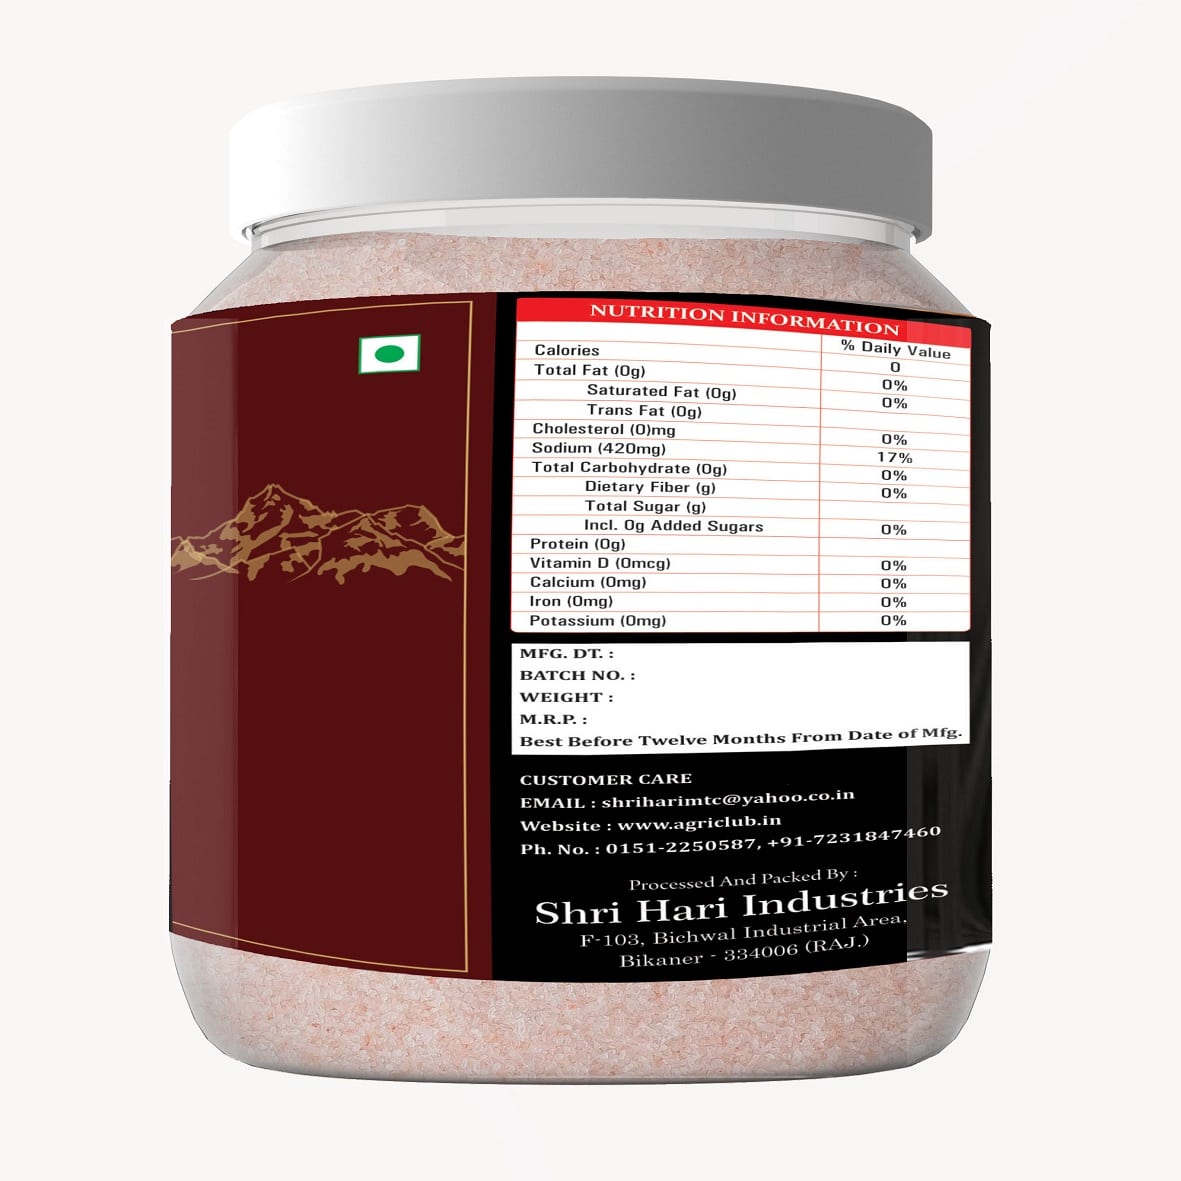 Himalayan Pink Salt 1Kg Premium Quality